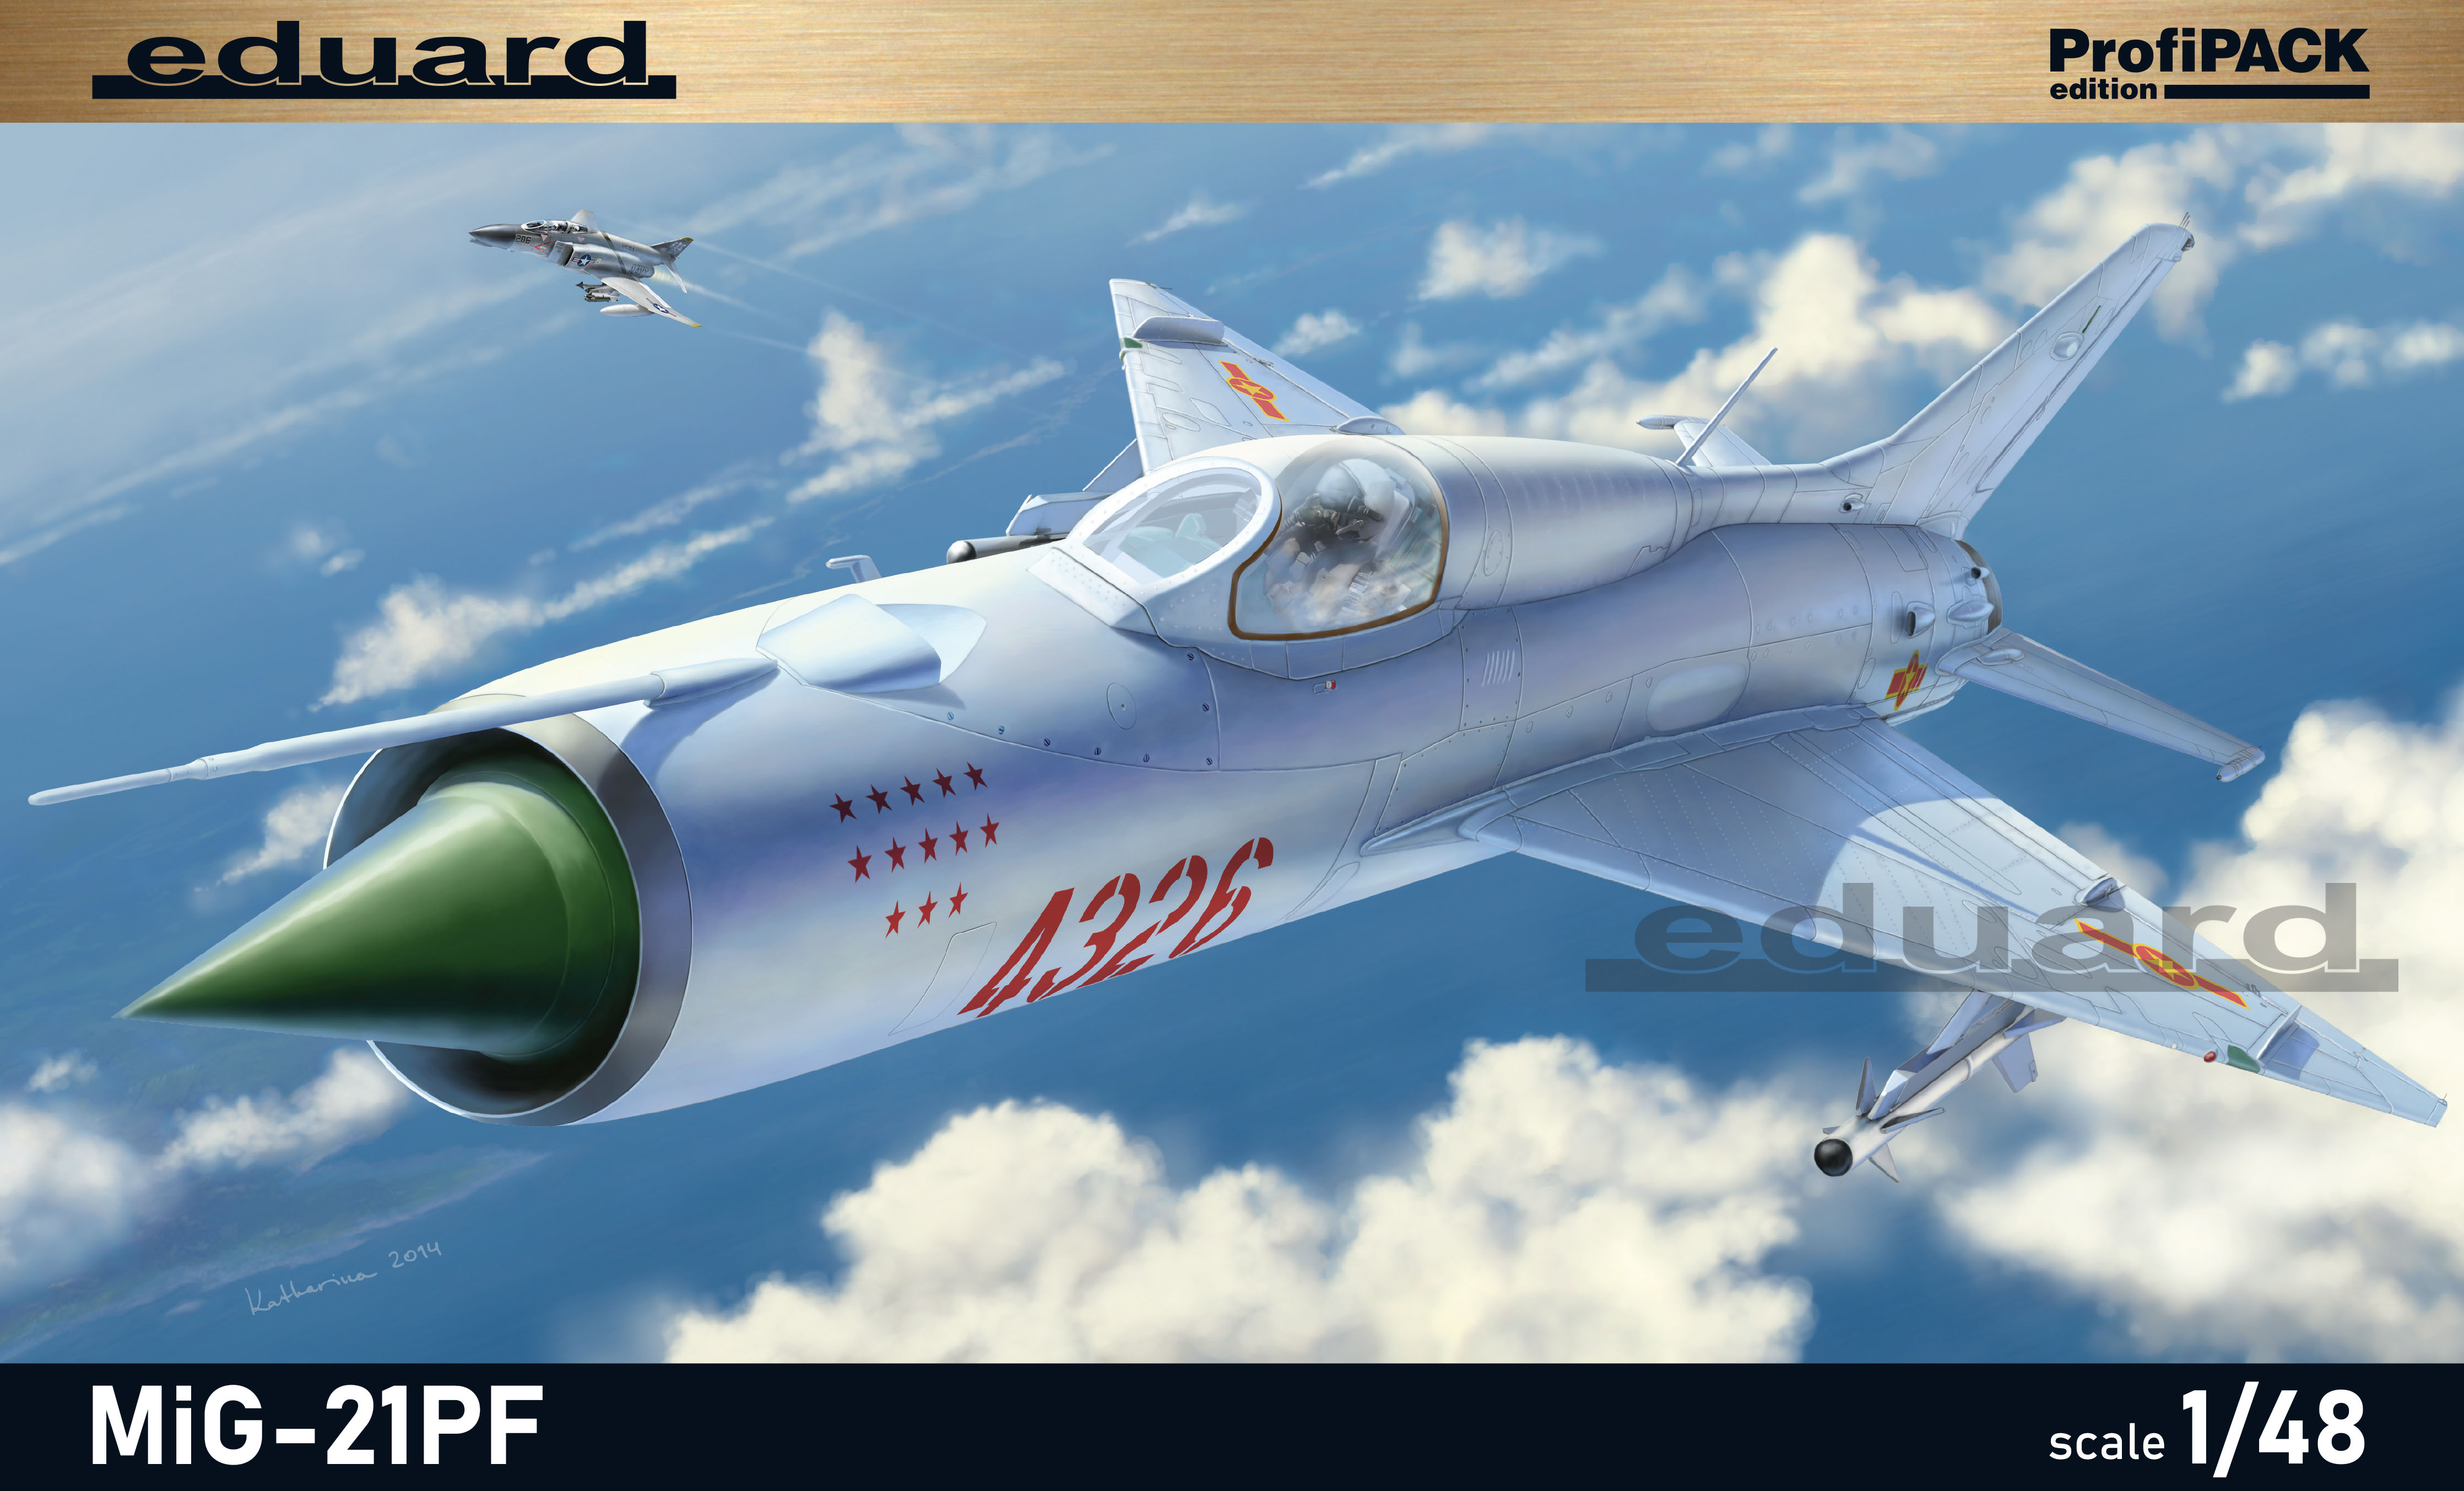 Model kit 1/48 Mikoyan MiG-21PF Profipack (Eduard kits)